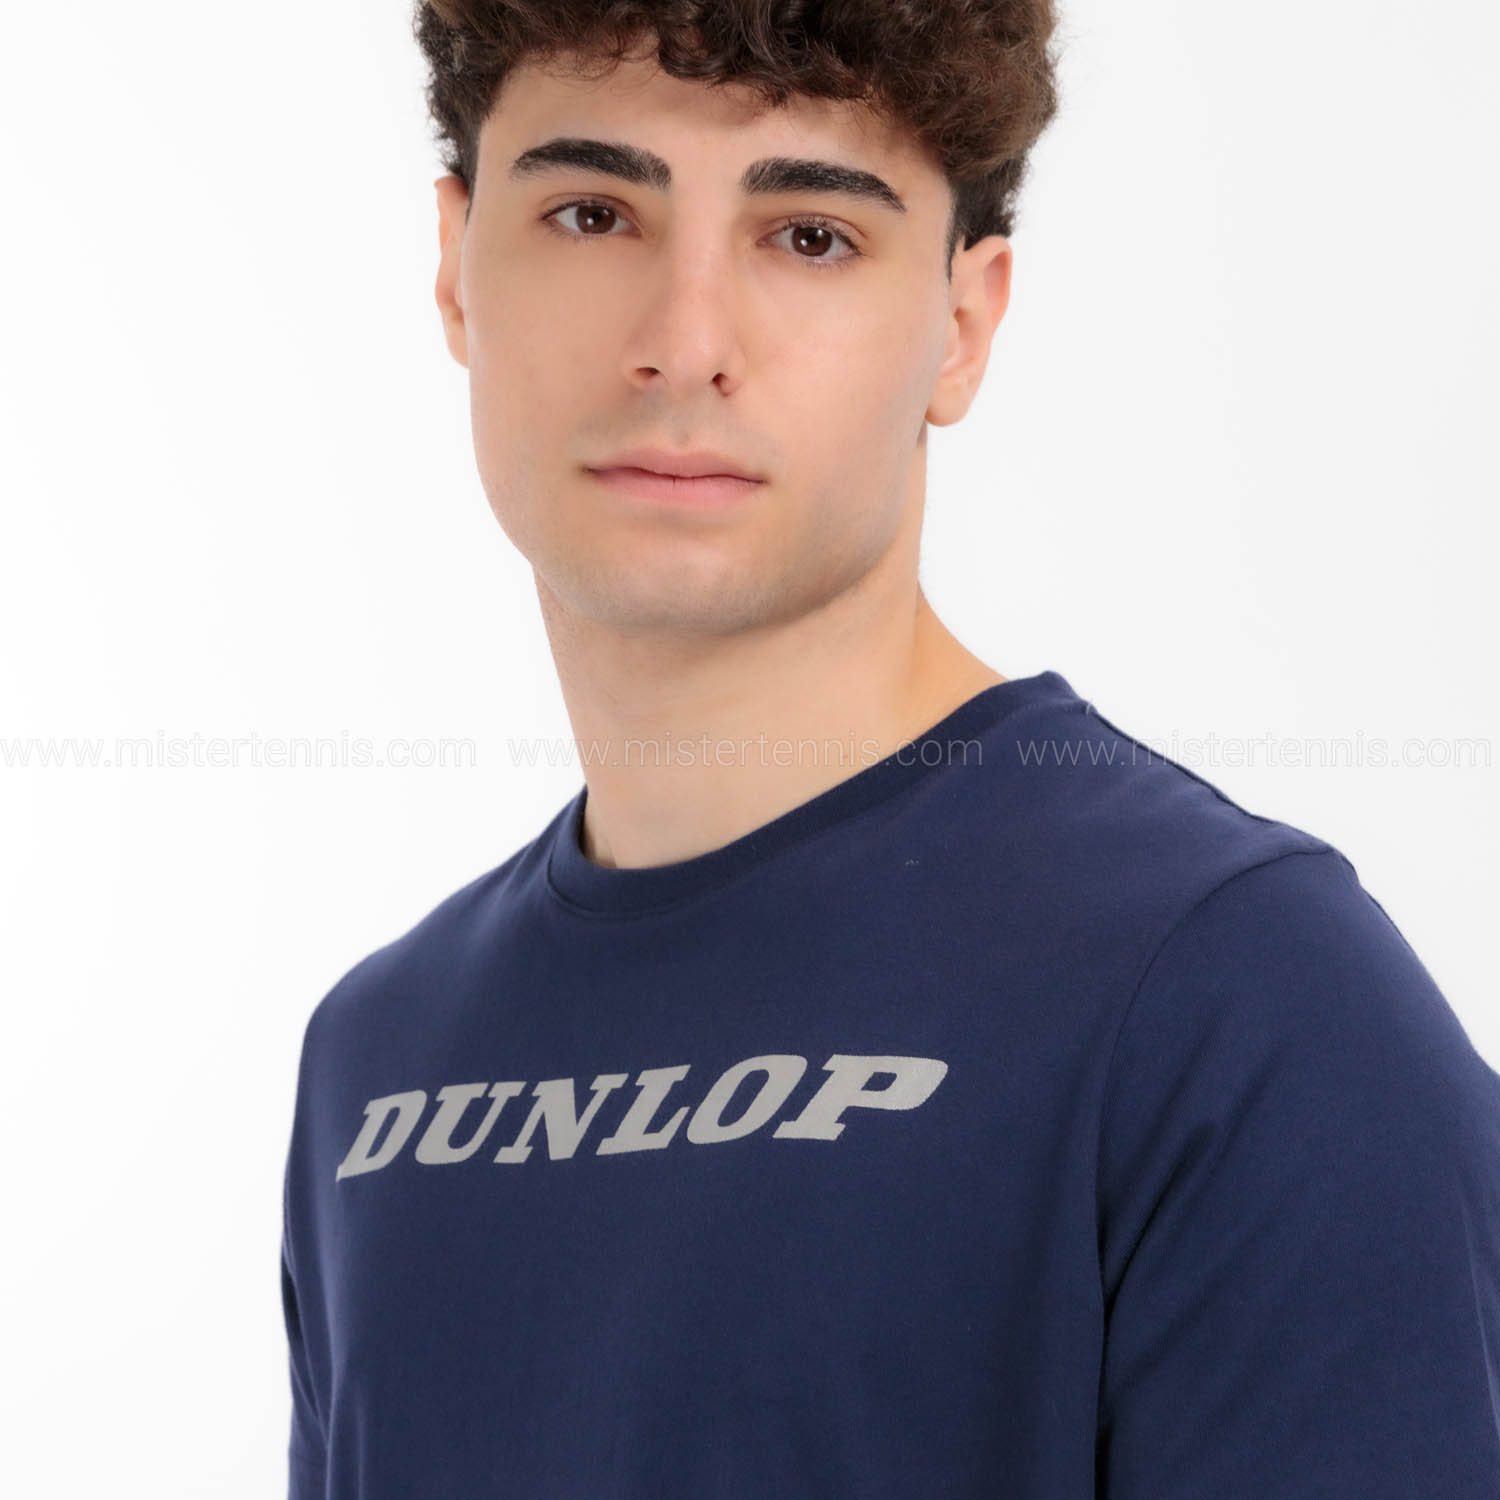 Dunlop Essentials Maglietta - Navy